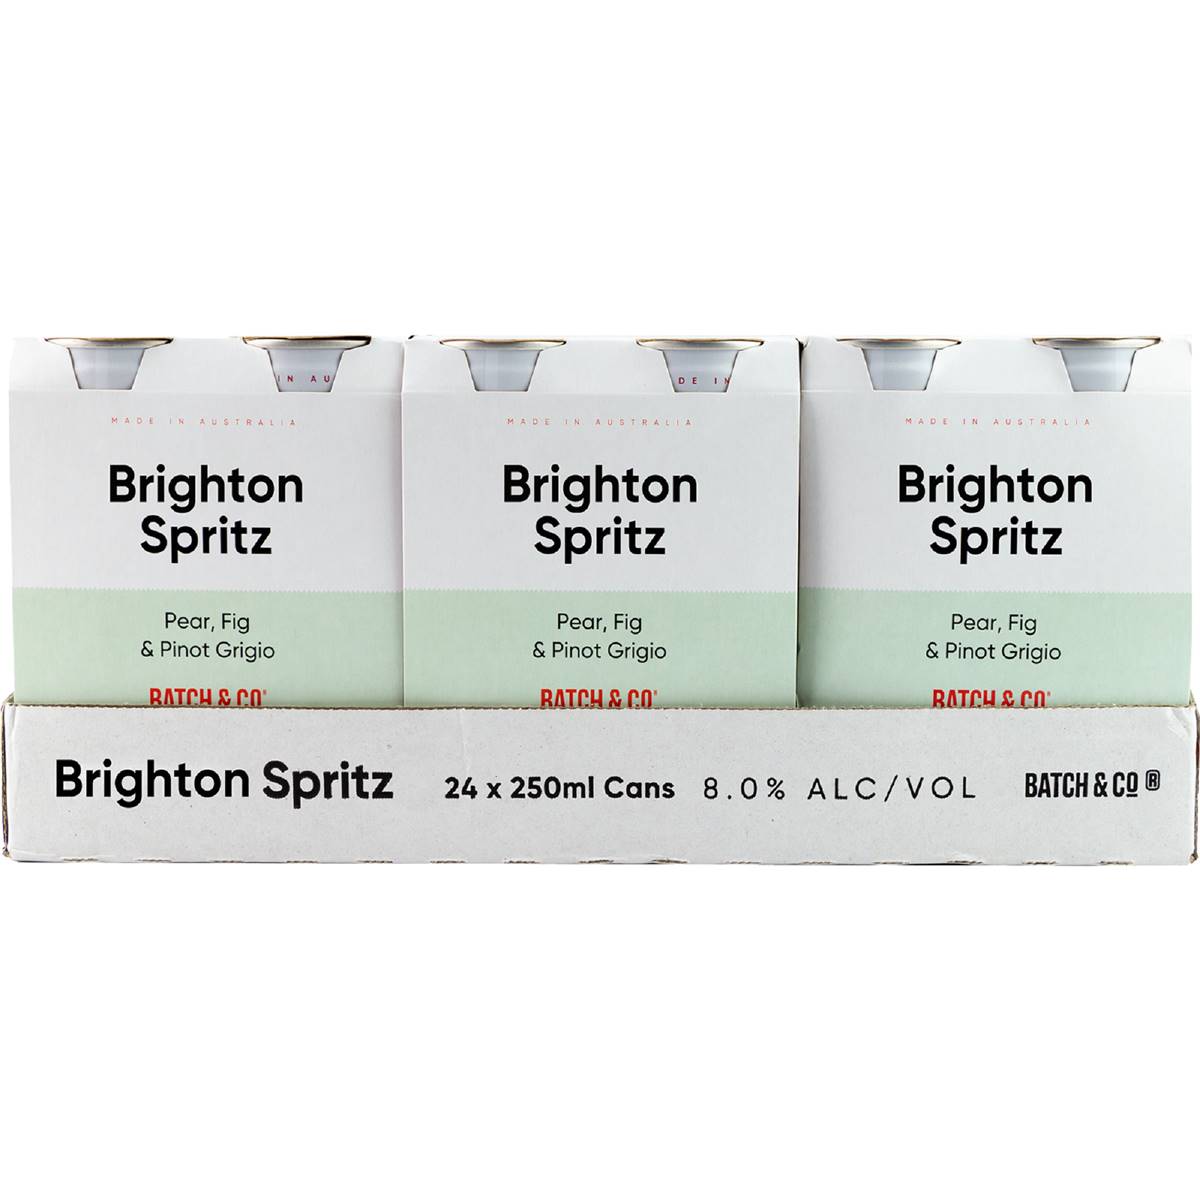 Batch & Co. Brighton Spritz 250ml